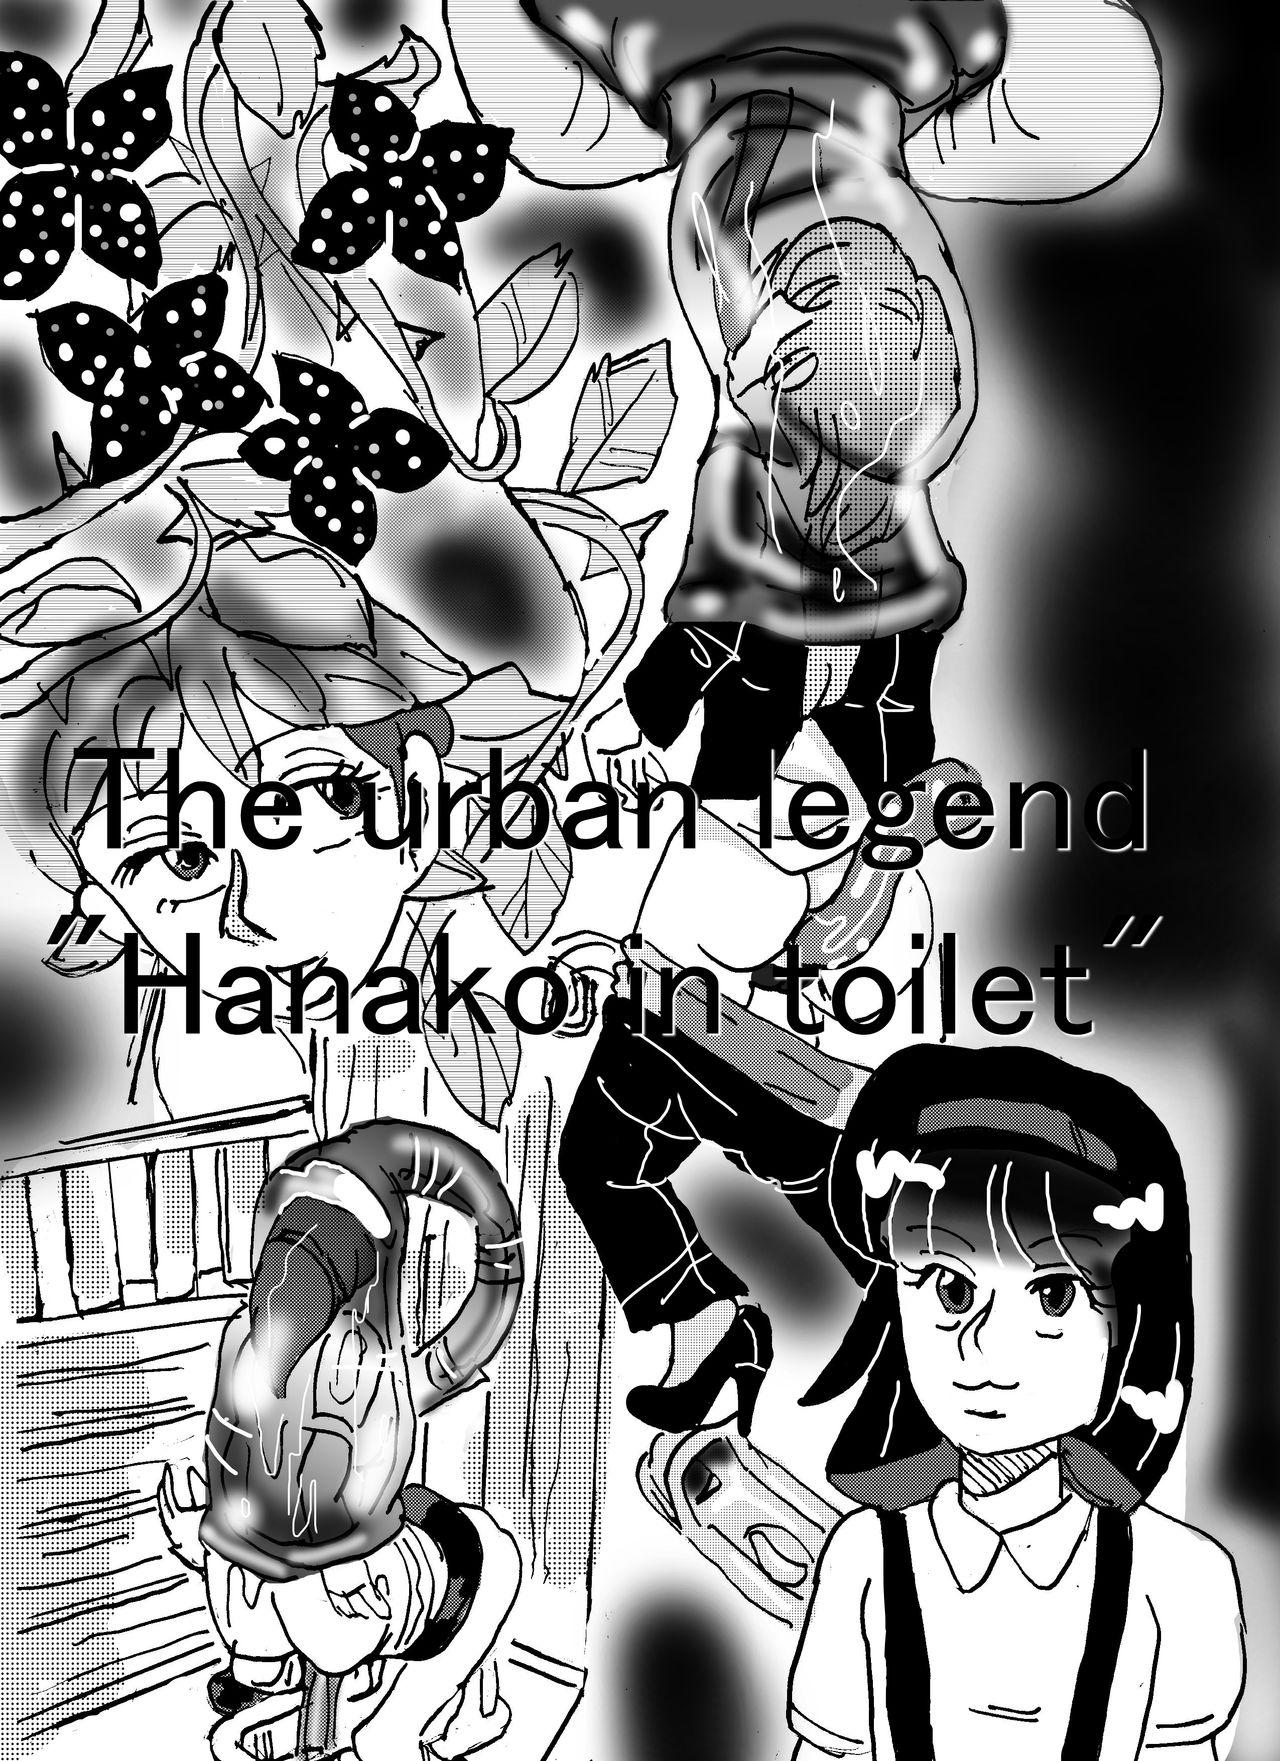 Urban legend "Ha*ako in toilet" 0